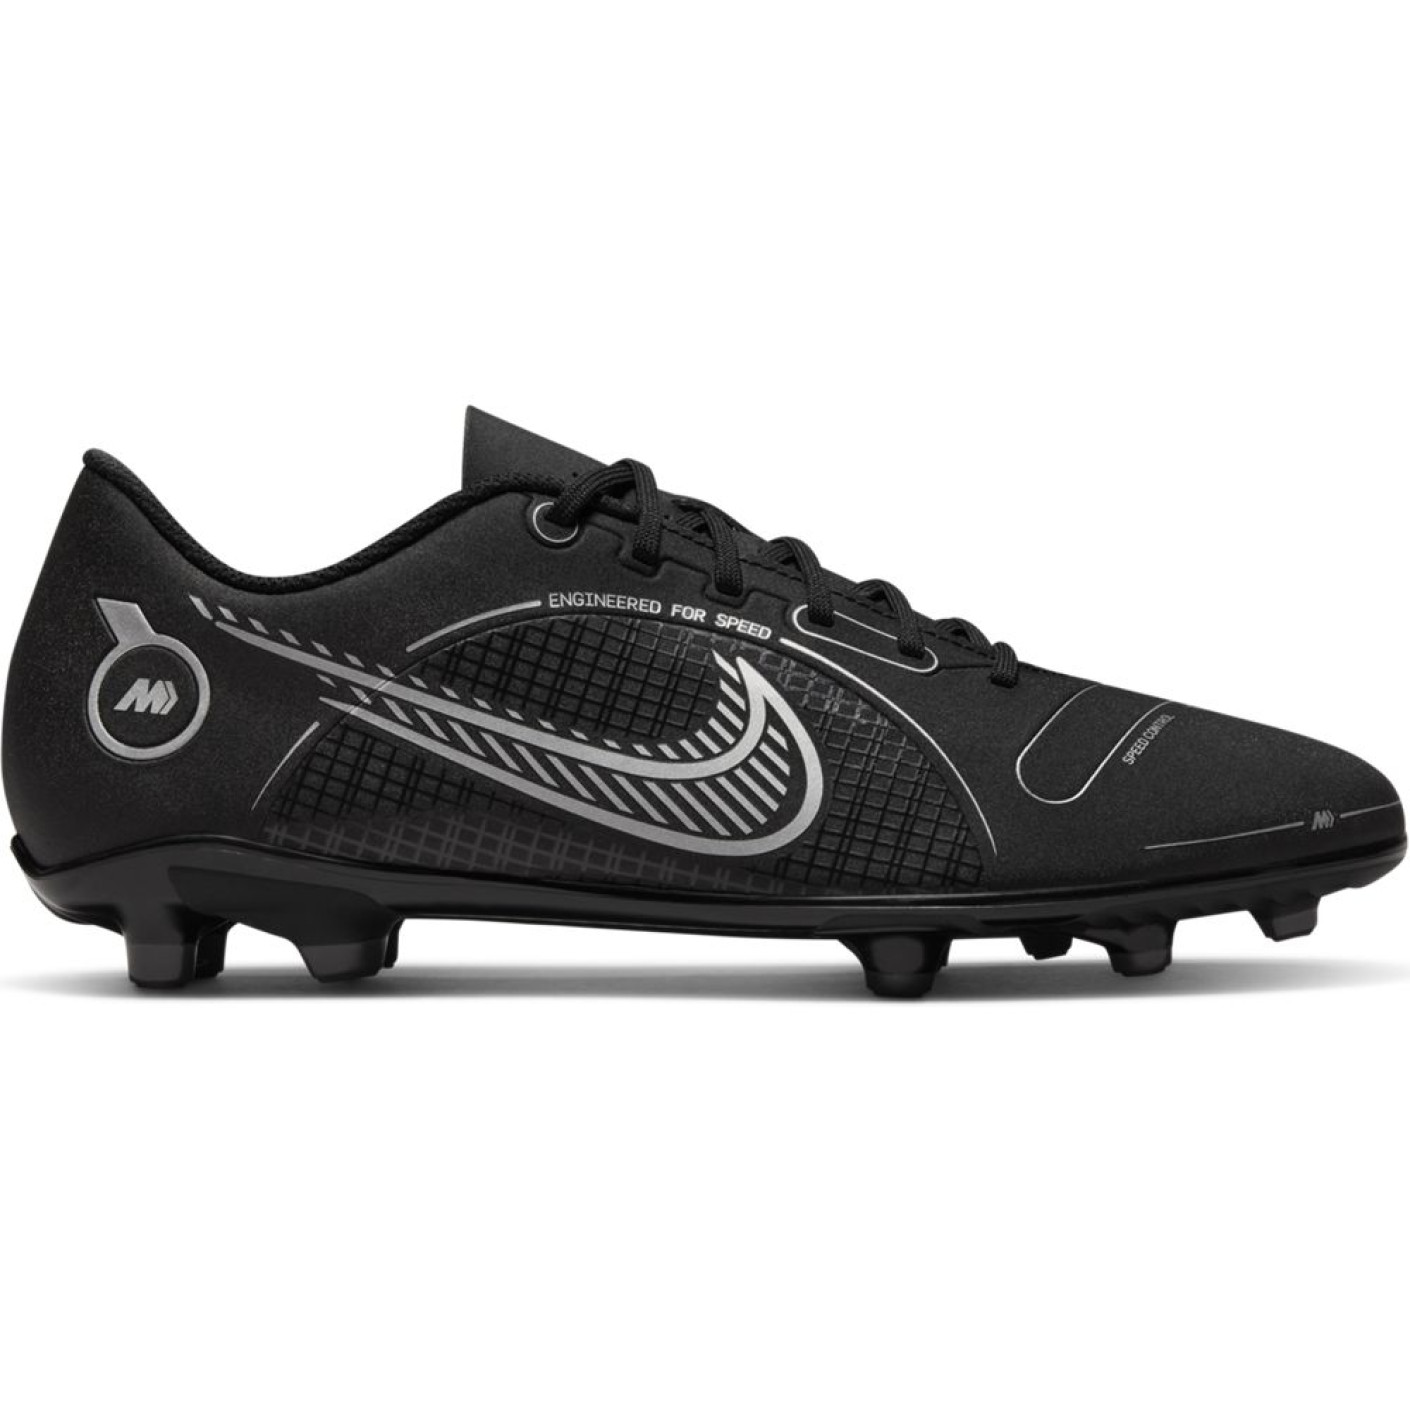 Nike Mercurial Vapor 14 Club Gazon Naturel Gazon Artificiel Chaussures de Foot (MG) Noir Gris Foncé